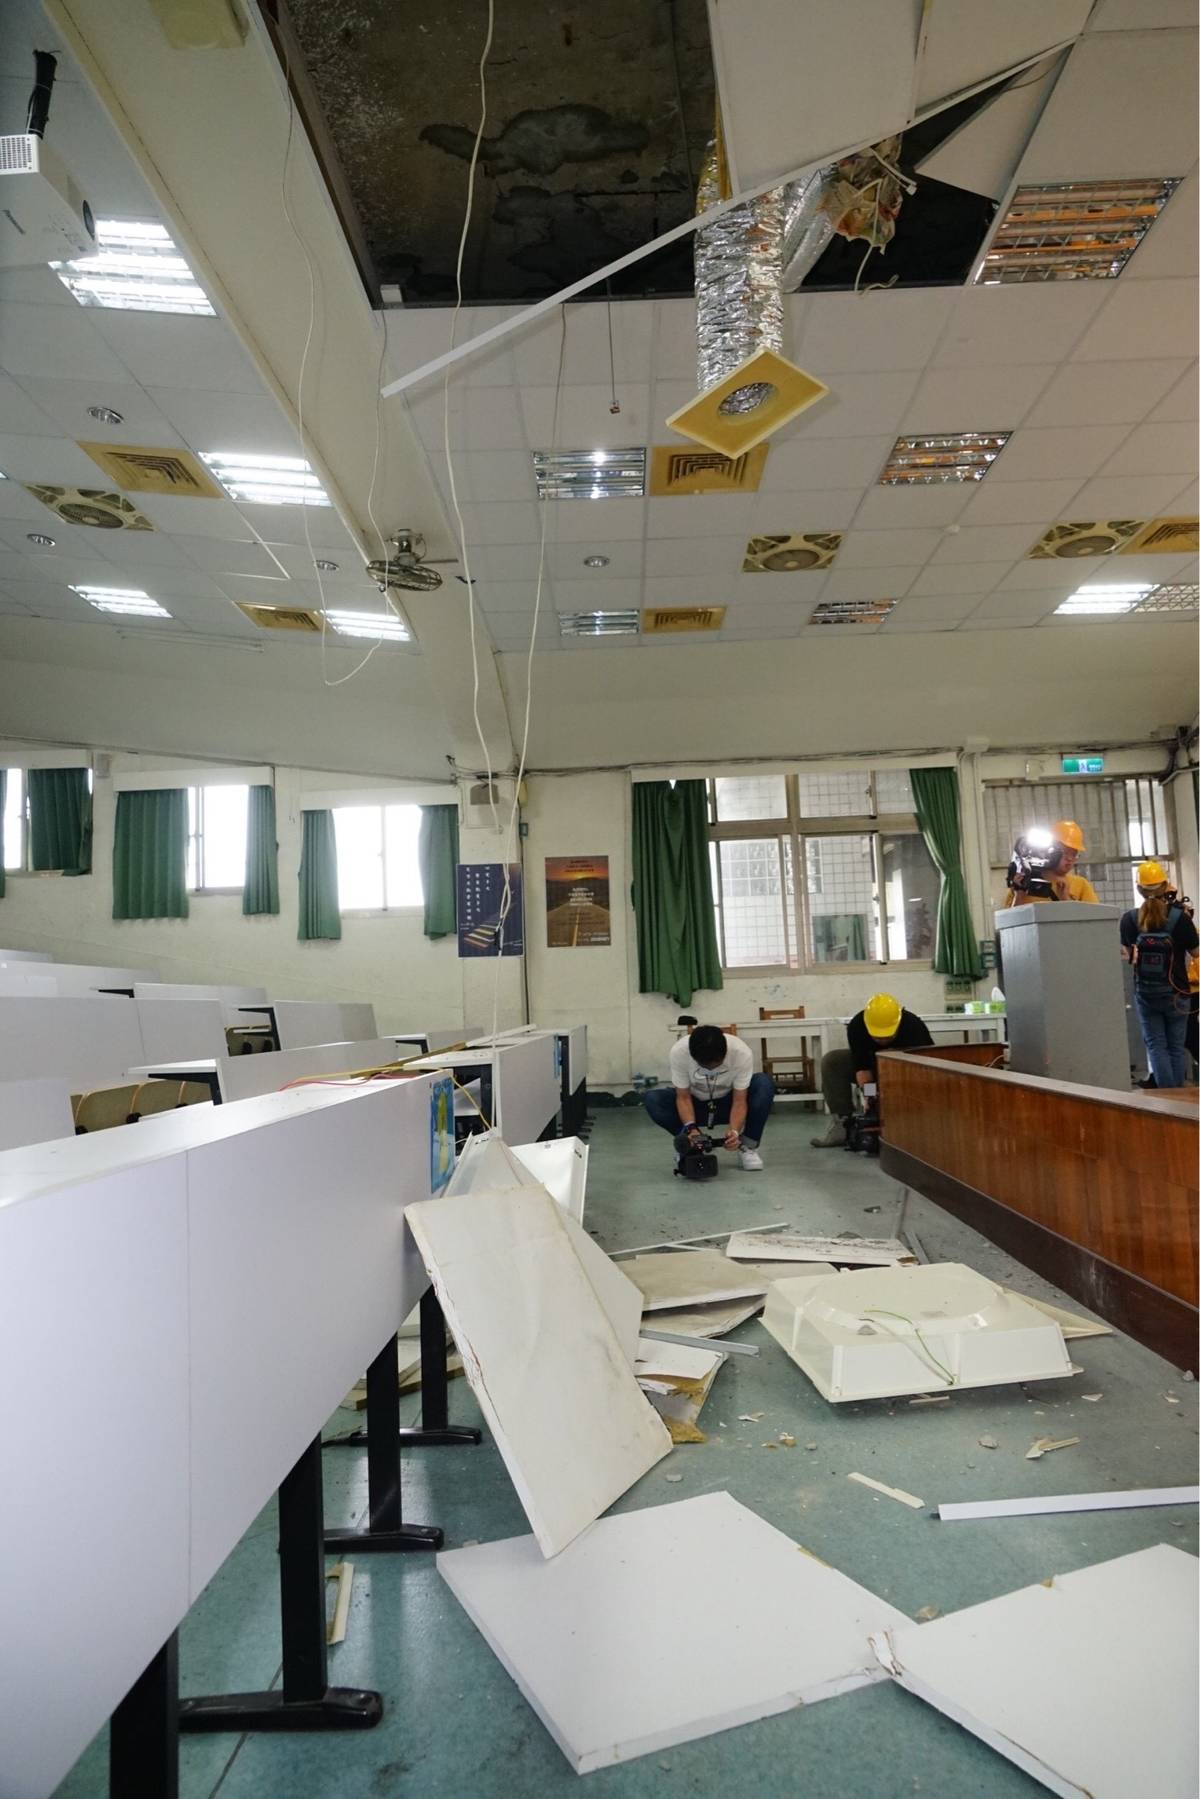 教室因為地震造成天花板掉落